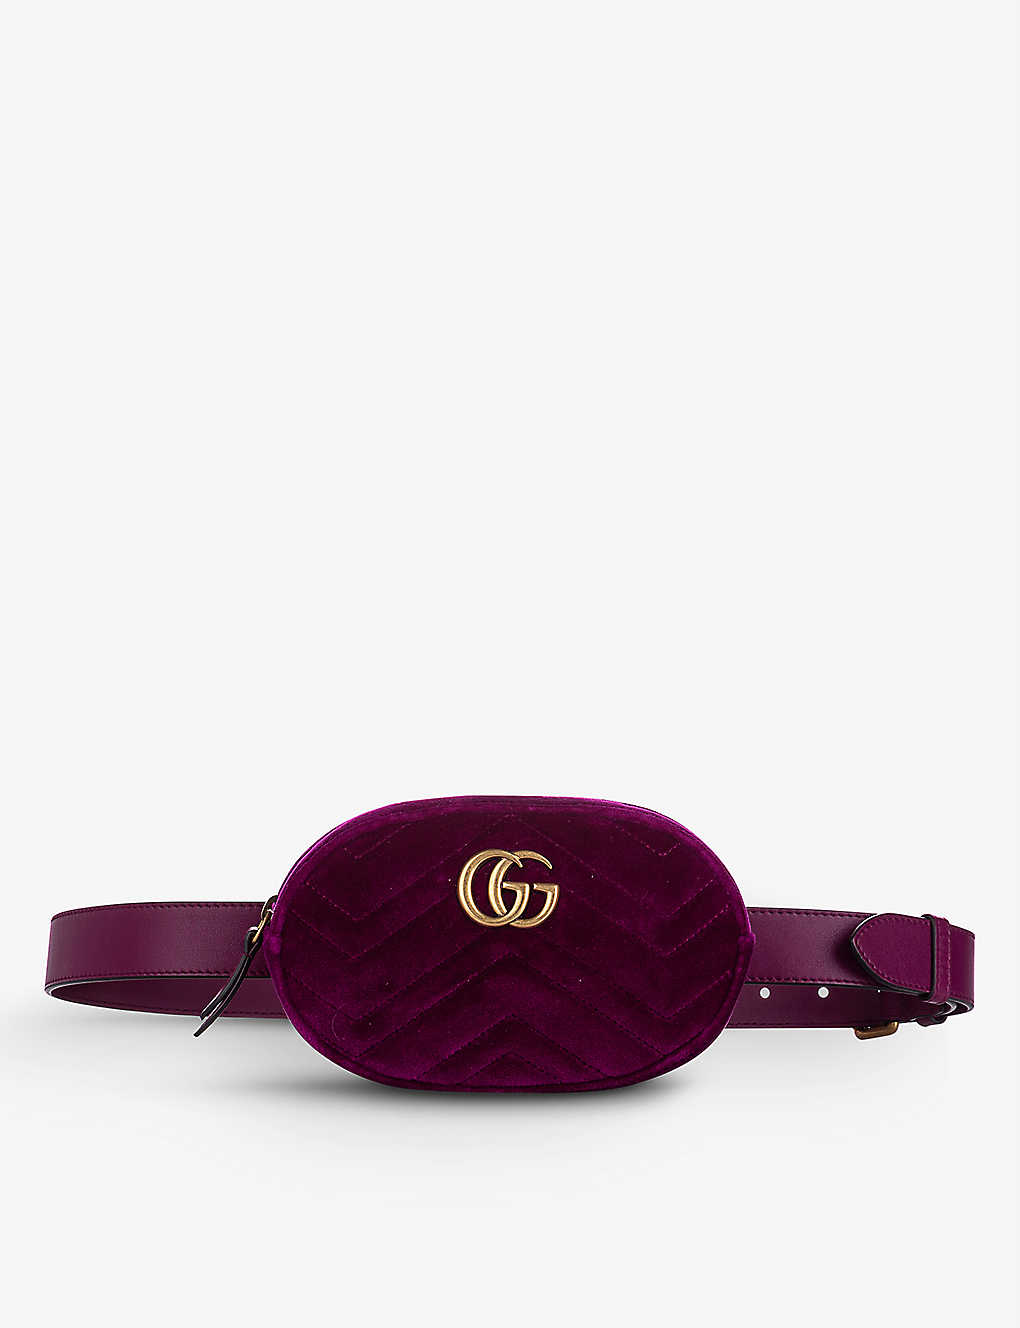 RESELLFRIDGES - Pre-loved Gucci GG Marmont velvet belt bag | www.waldenwongart.com